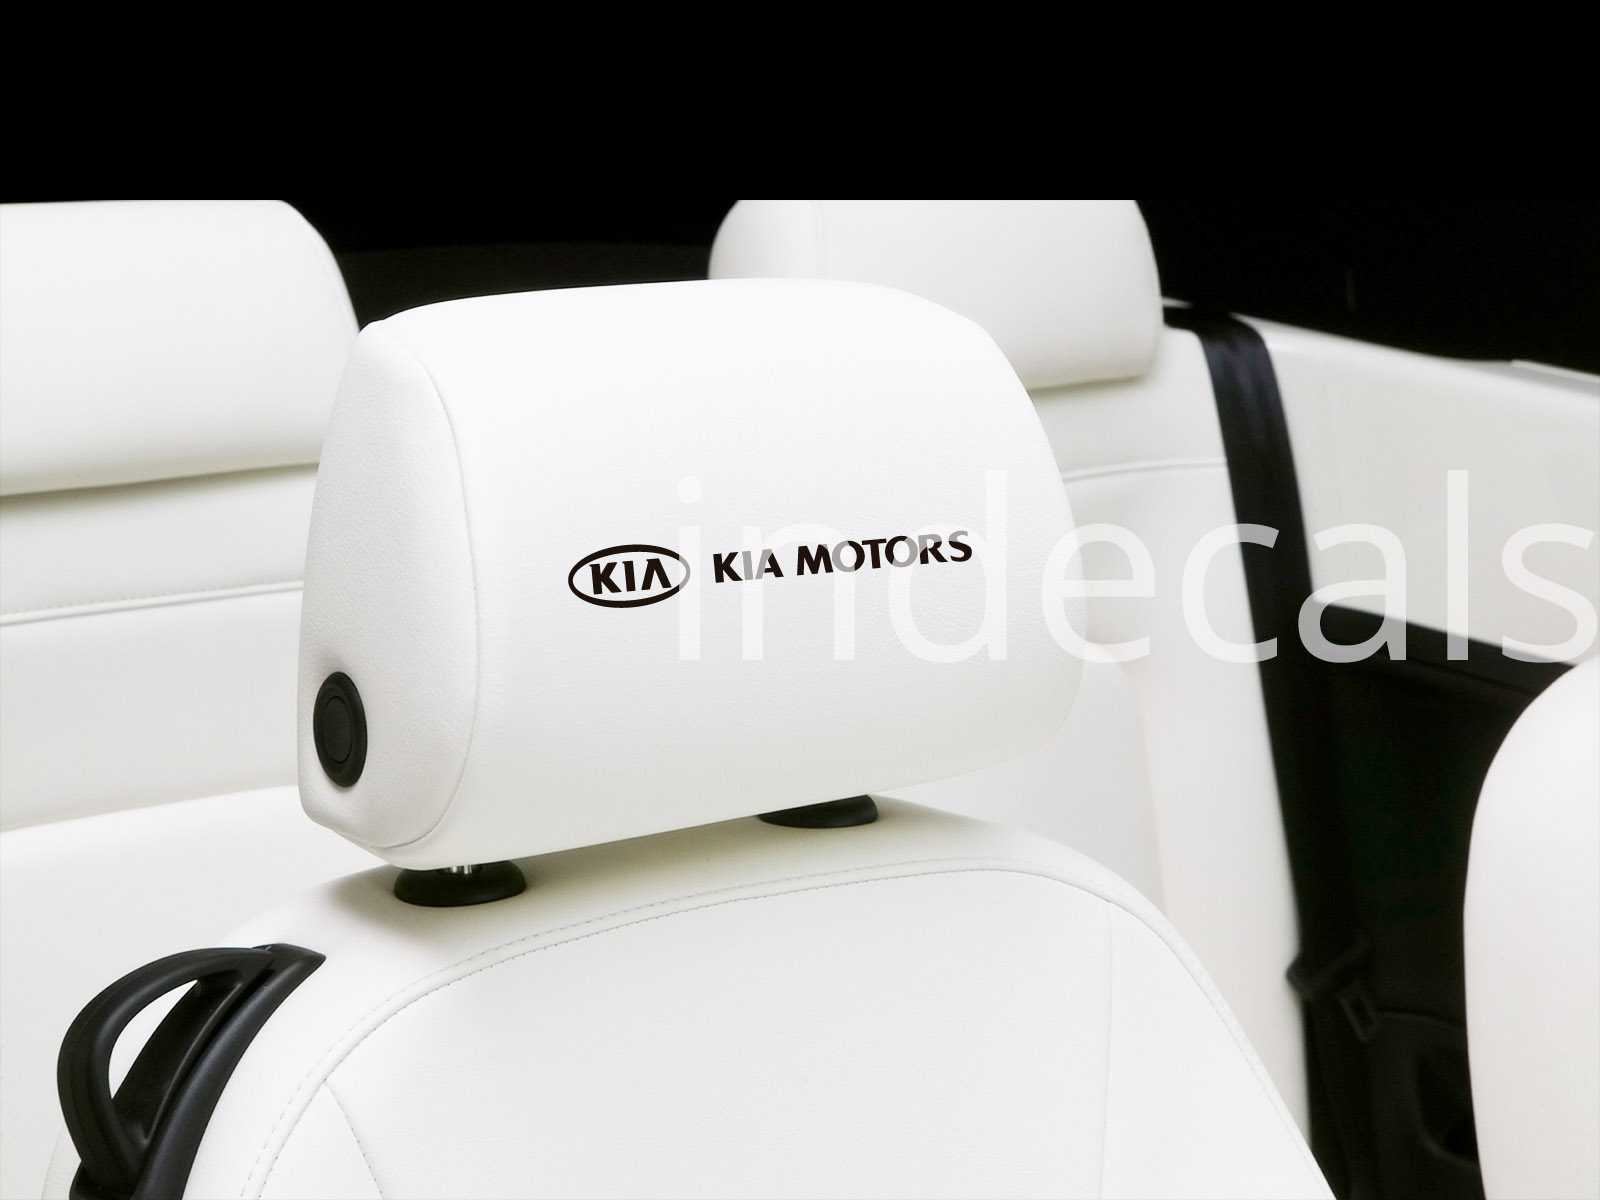 6 x Kia Stickers for Headrests - Black